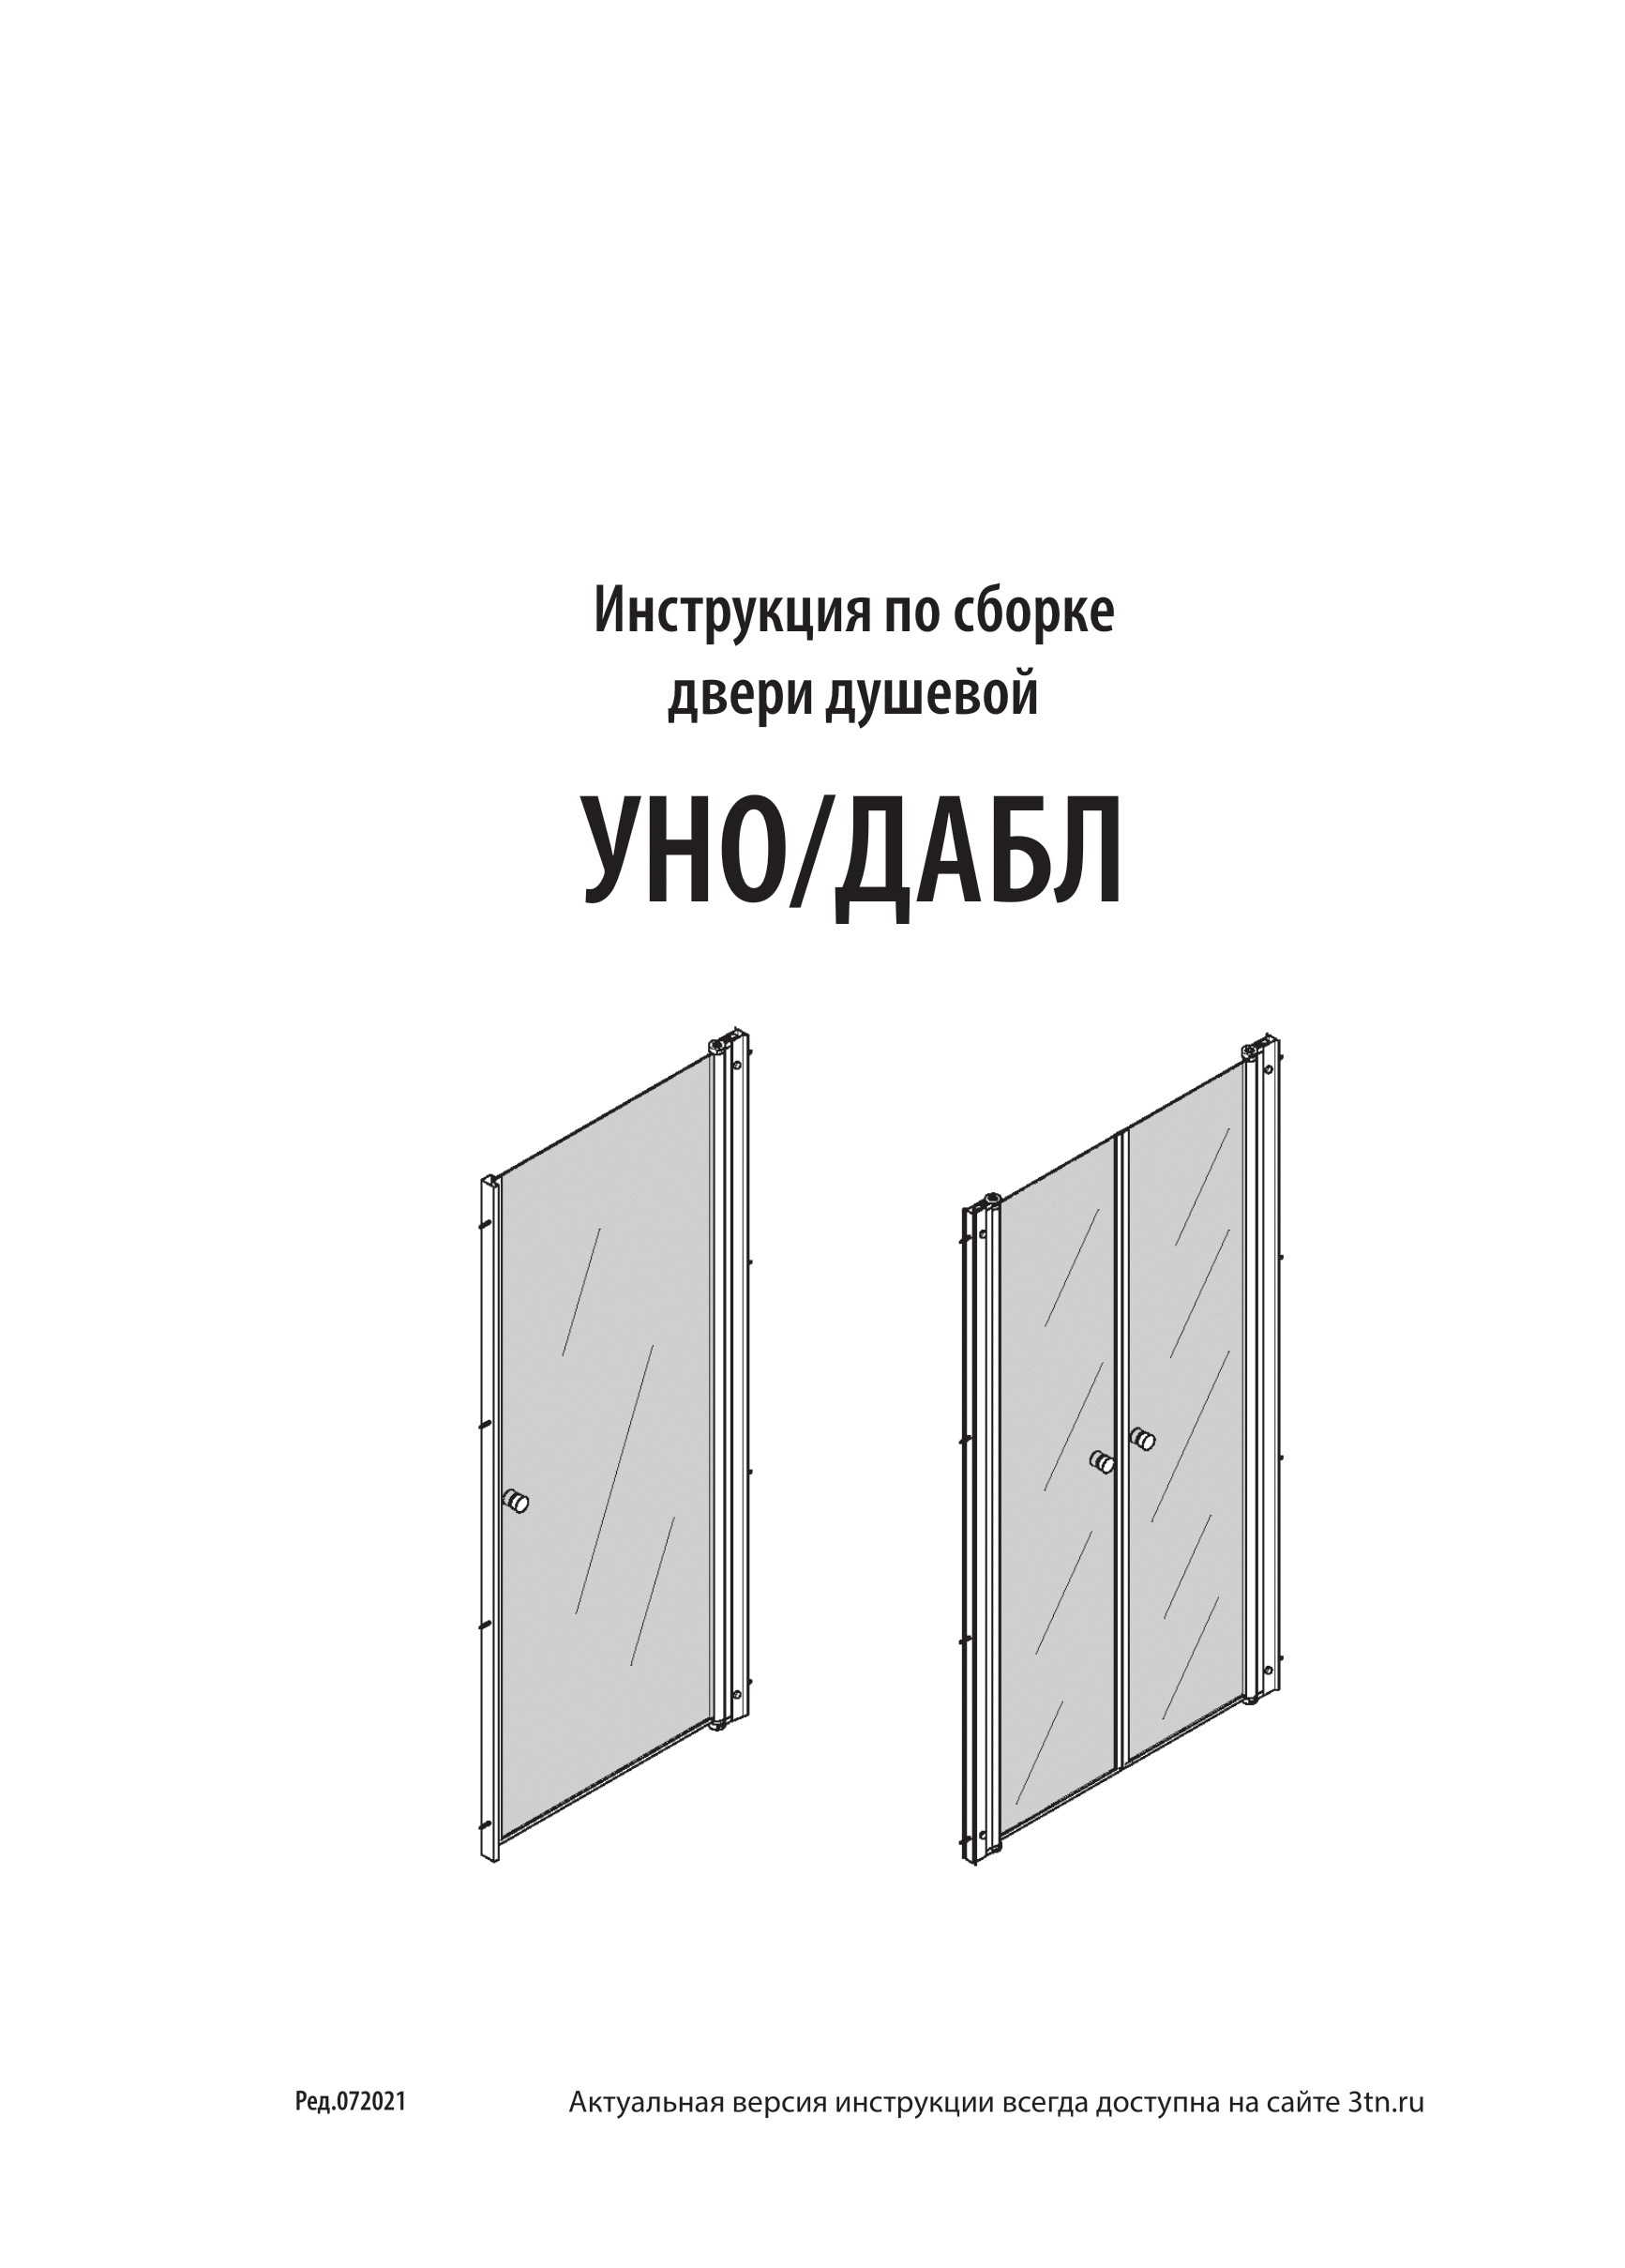 Инструкция по сборке двери душевой УНО/ДАБЛ